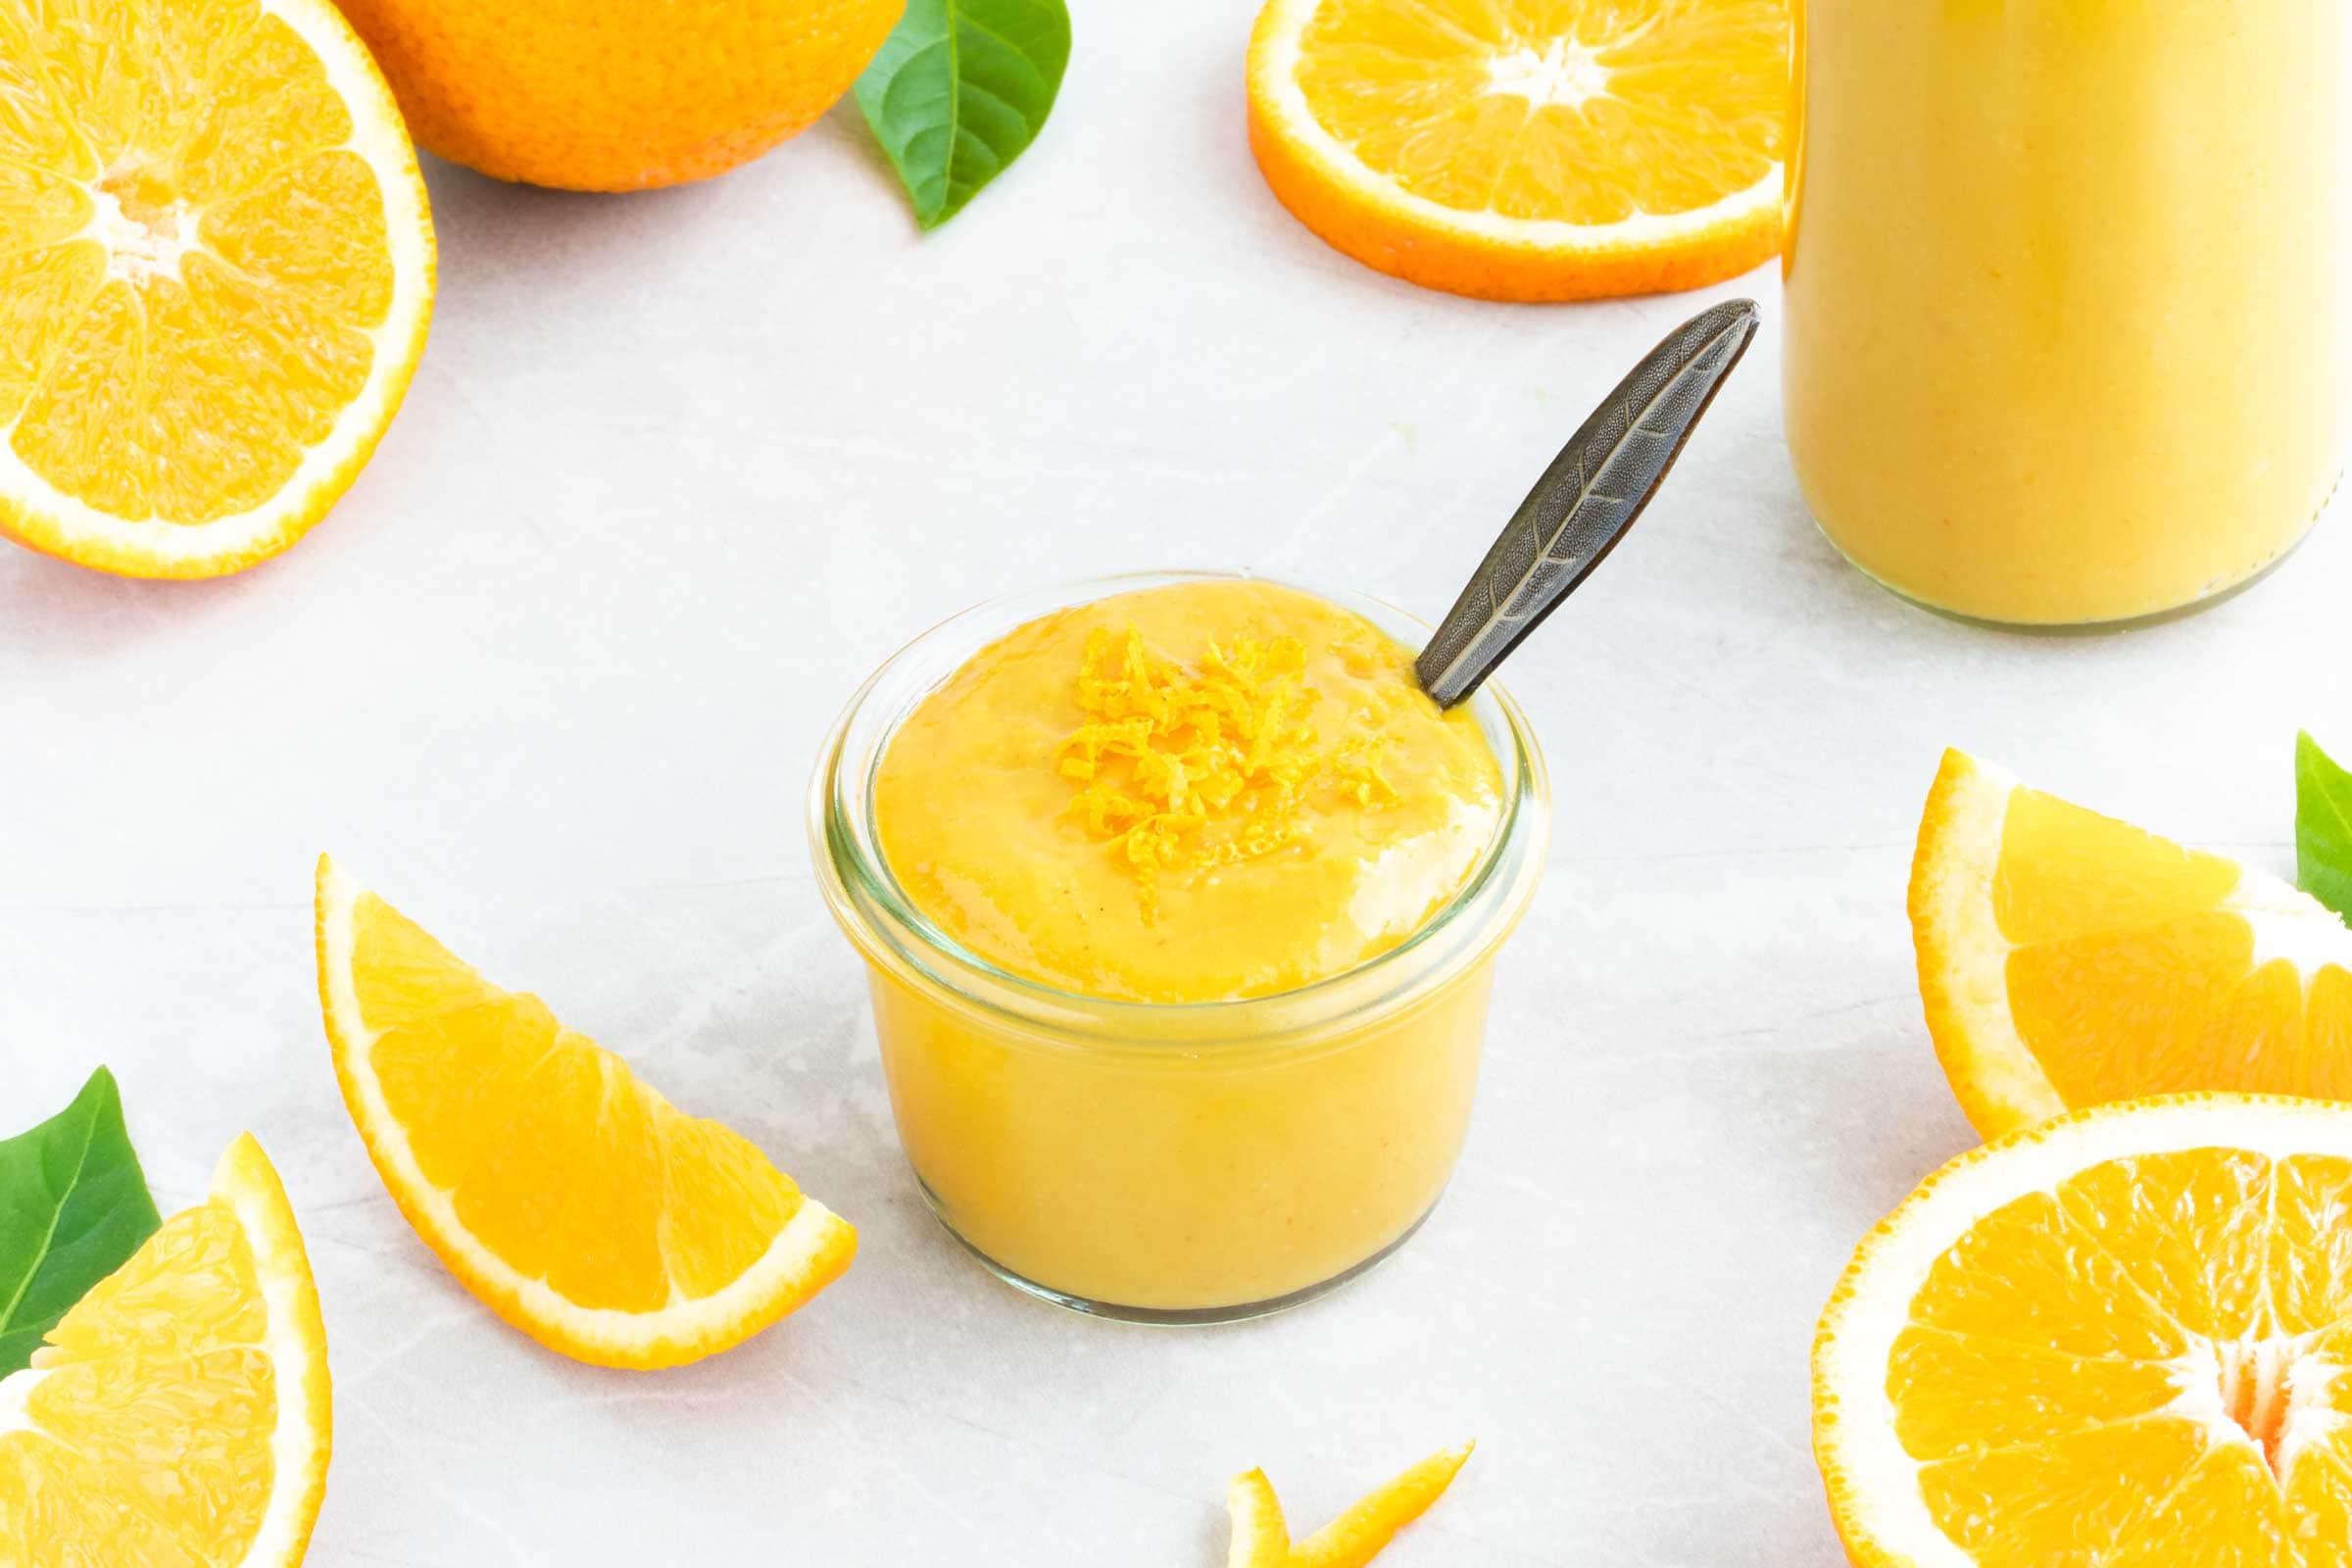 Orangen-Senf-Sauce in einem kleinen Schälchen mit Löffel. Neben der gelben Orangen-Senf-Sauce liegen eine ganze und mehrere geschnittene Orangen.